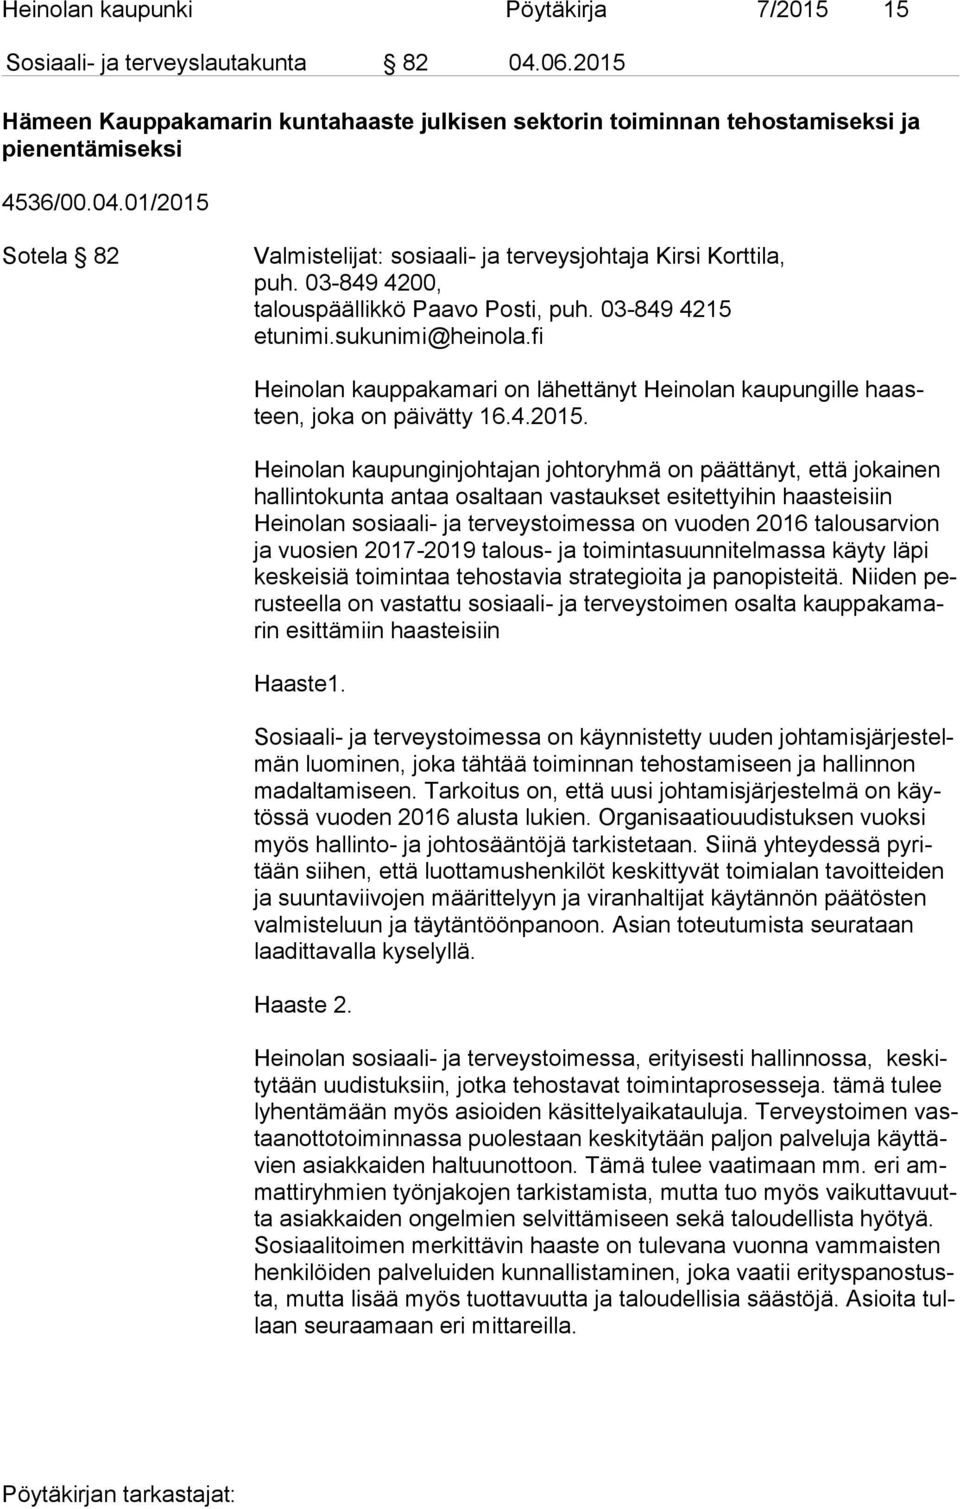 Heinolan kaupunginjohtajan johtoryhmä on päättänyt, että jokainen hal lin to kun ta antaa osaltaan vastaukset esitettyihin haasteisiin Heinolan sosiaali- ja terveystoimessa on vuoden 2016